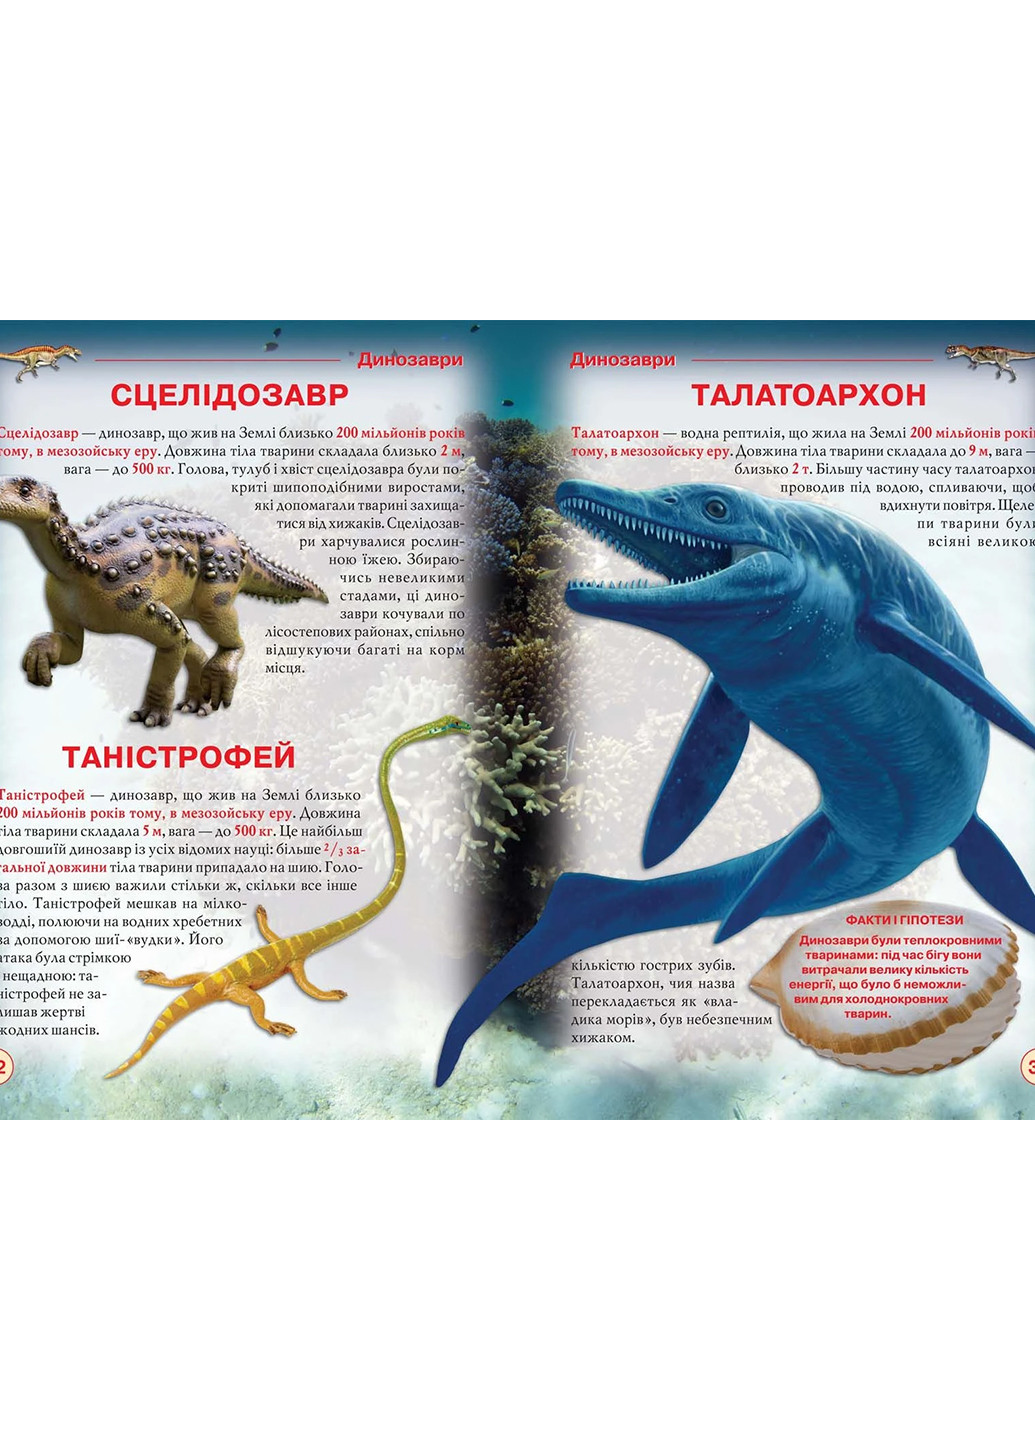 Книга Динозаври та інші давні тварини 7957 Crystal Book (257038437)